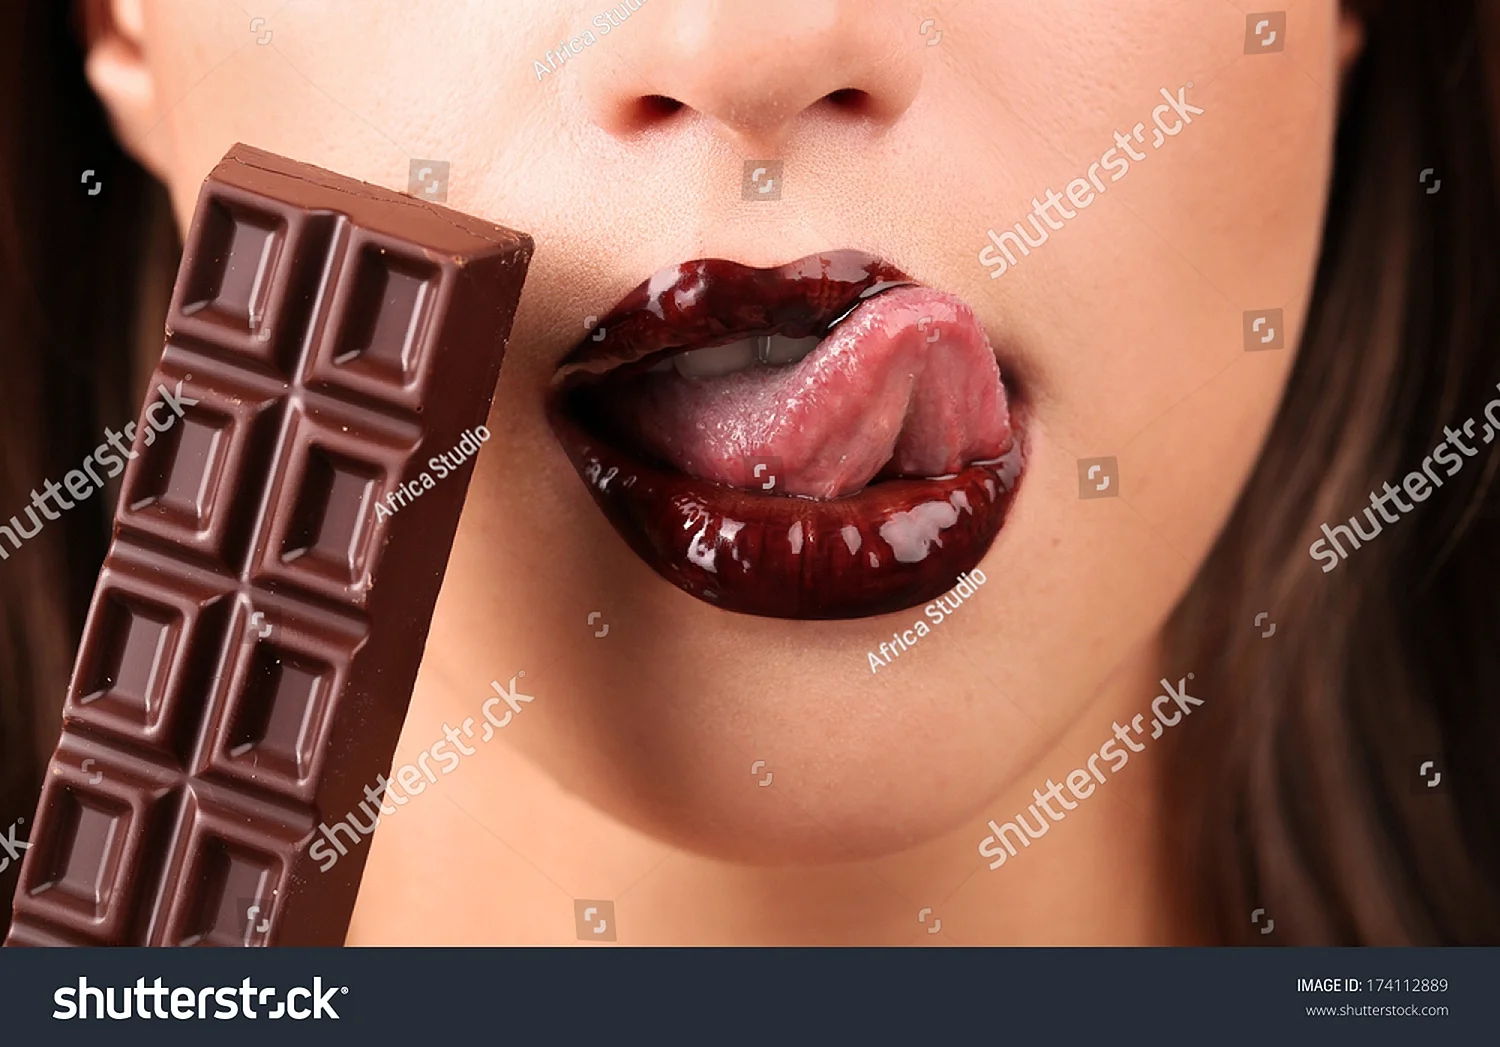 Губы в шоколаде